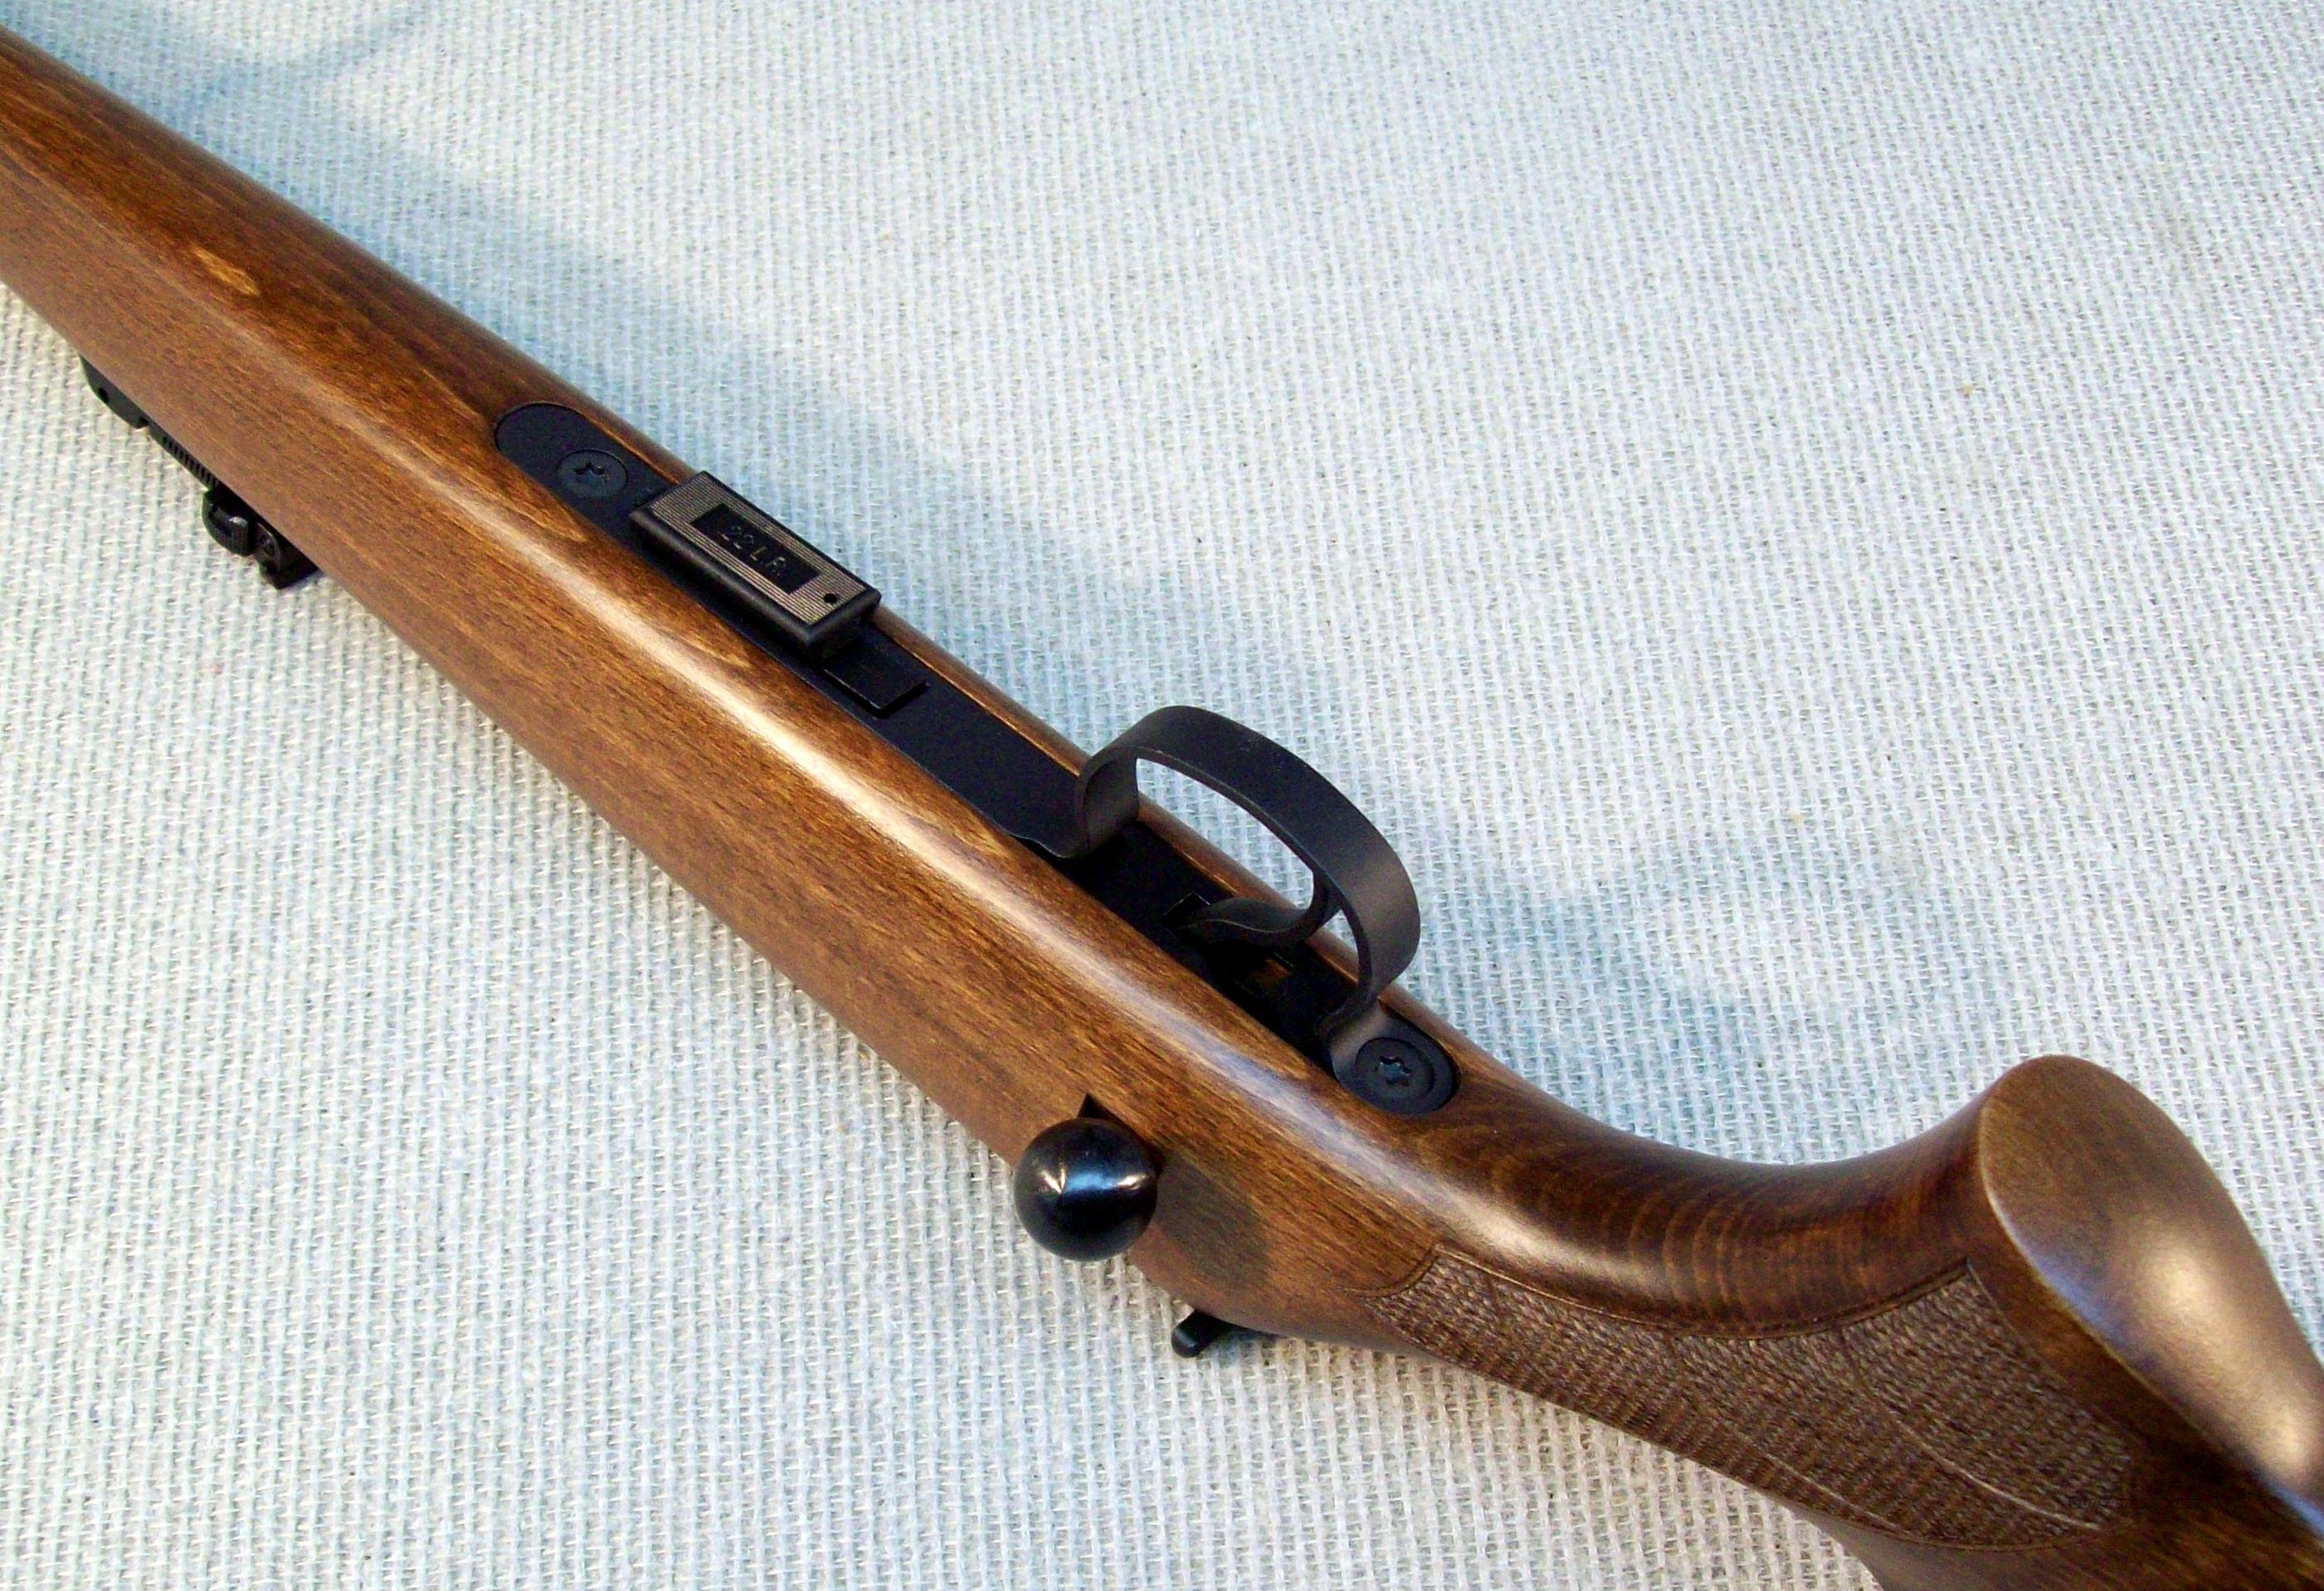 CZ 455 22 LR Training Rifle for sale at Gunsamerica.com: 943051664